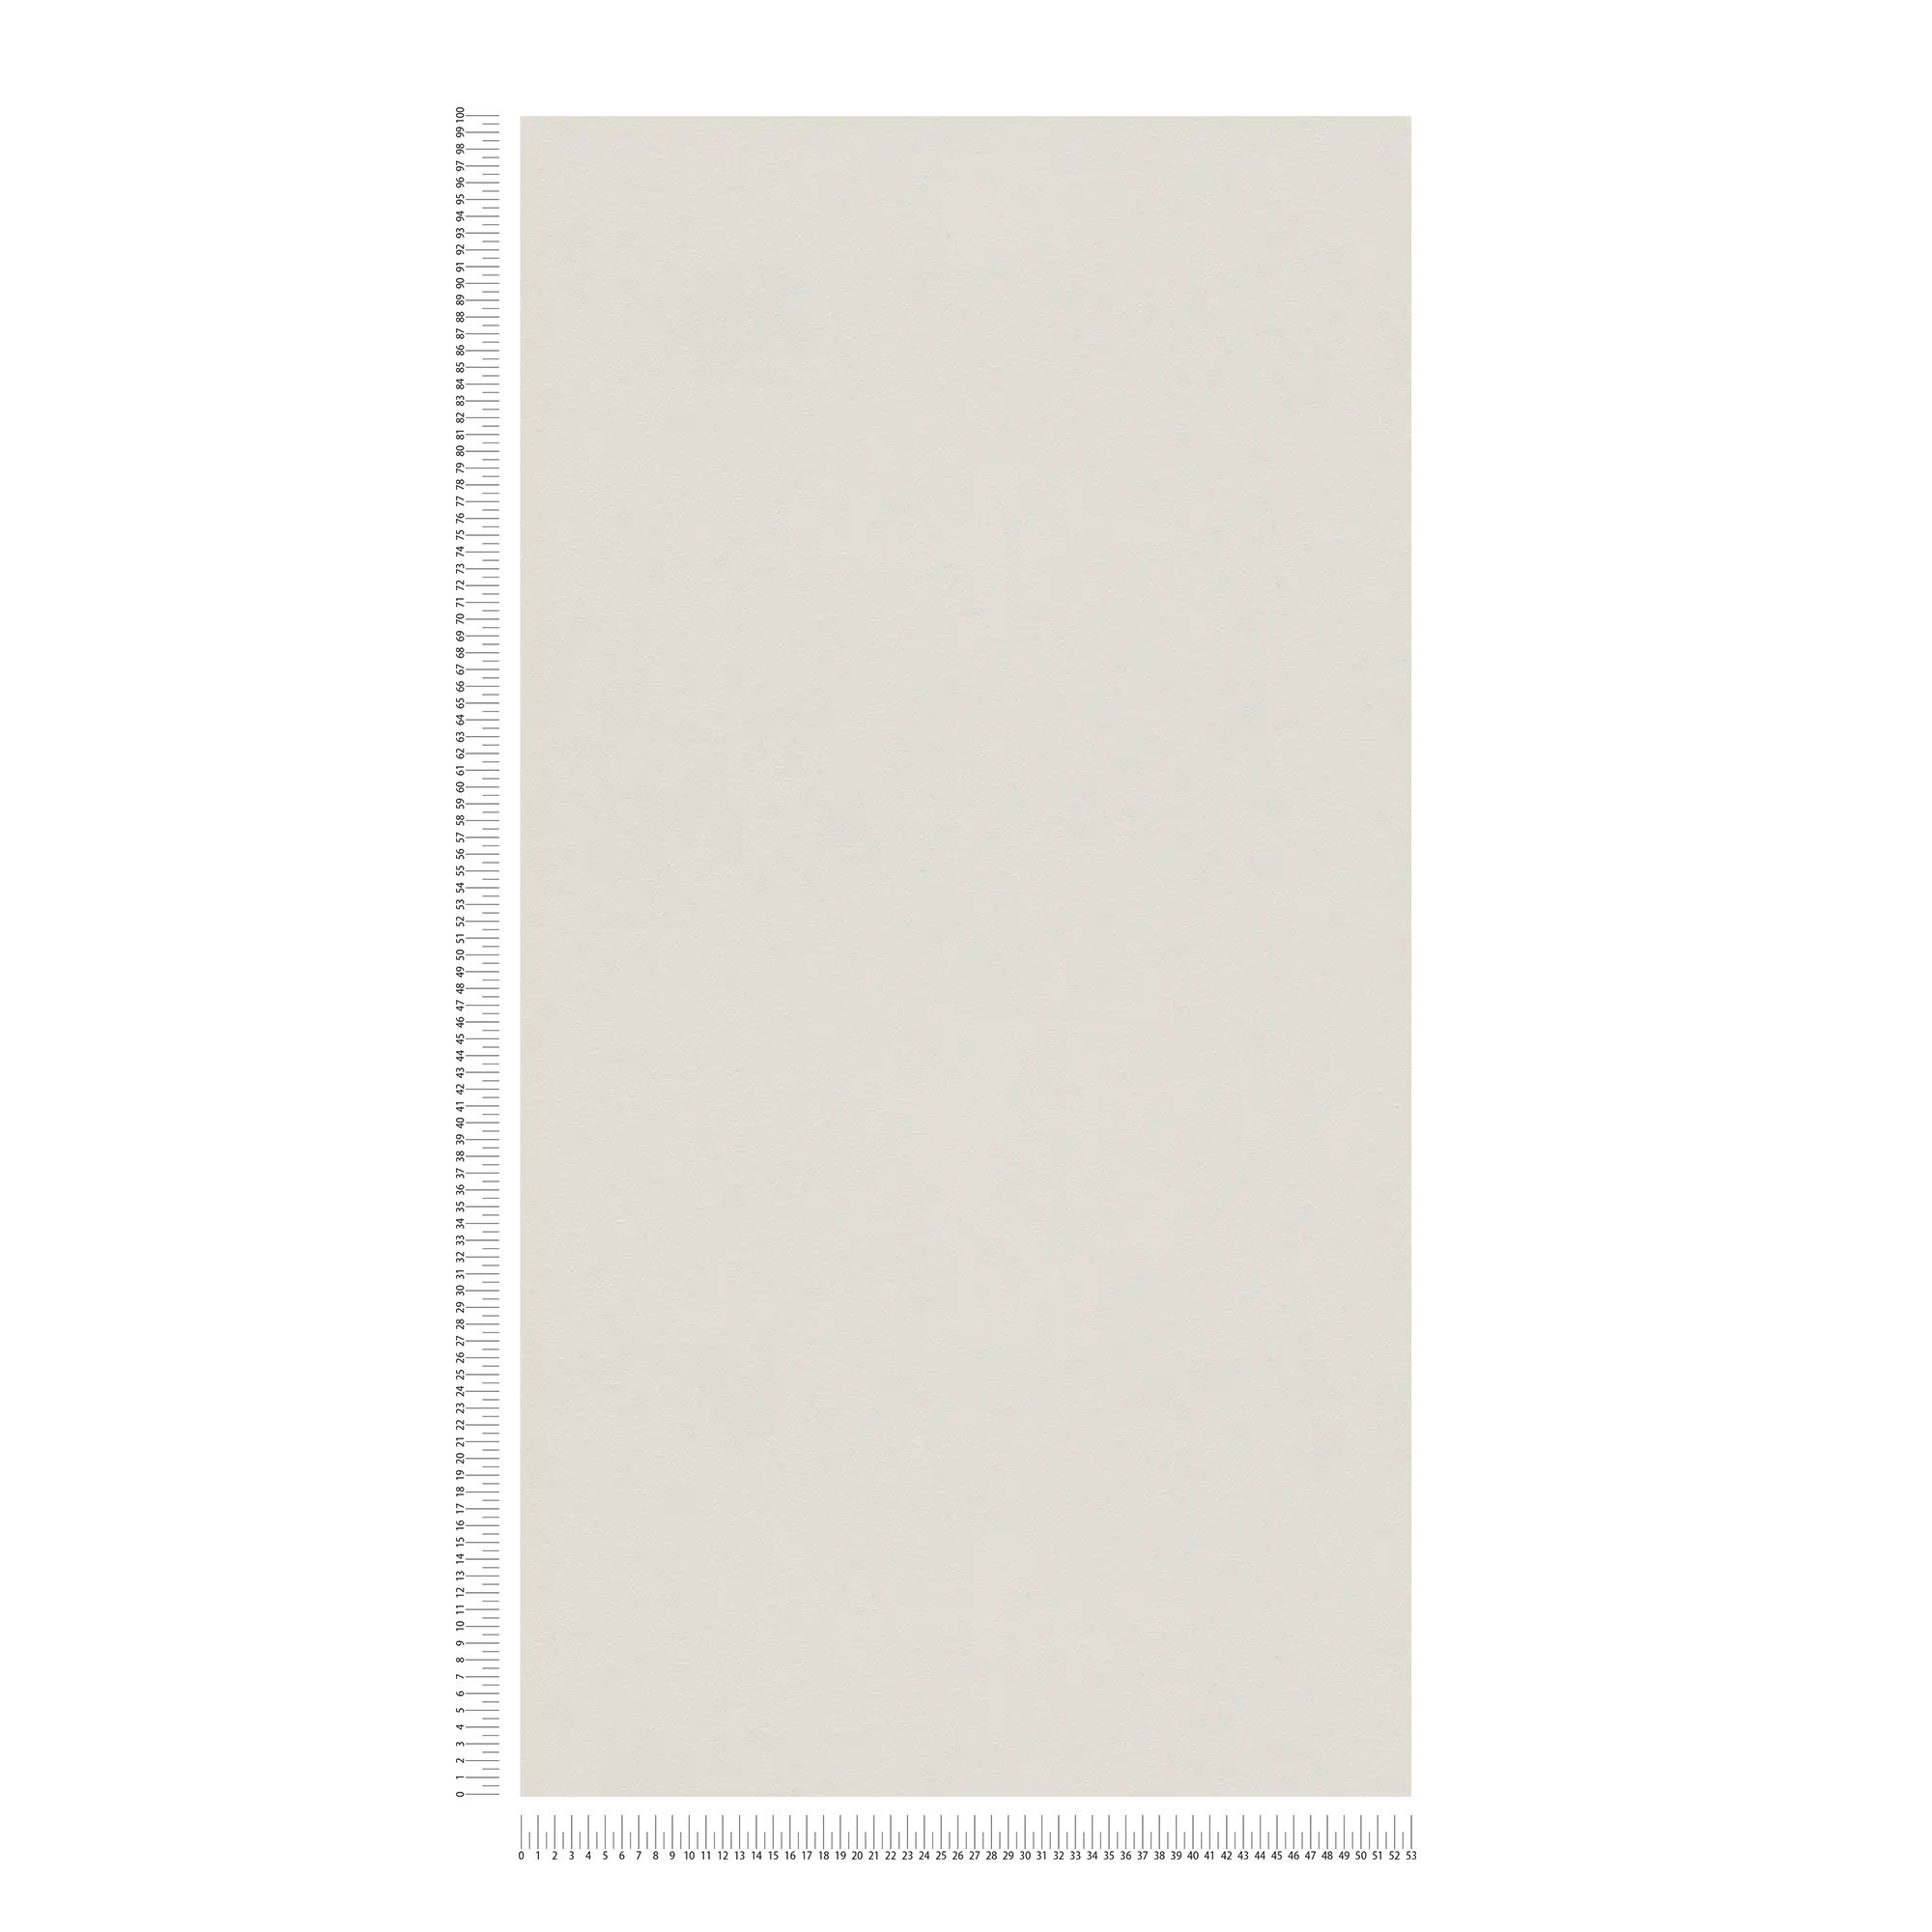             Papier peint uni neutre avec surface satinée - gris
        